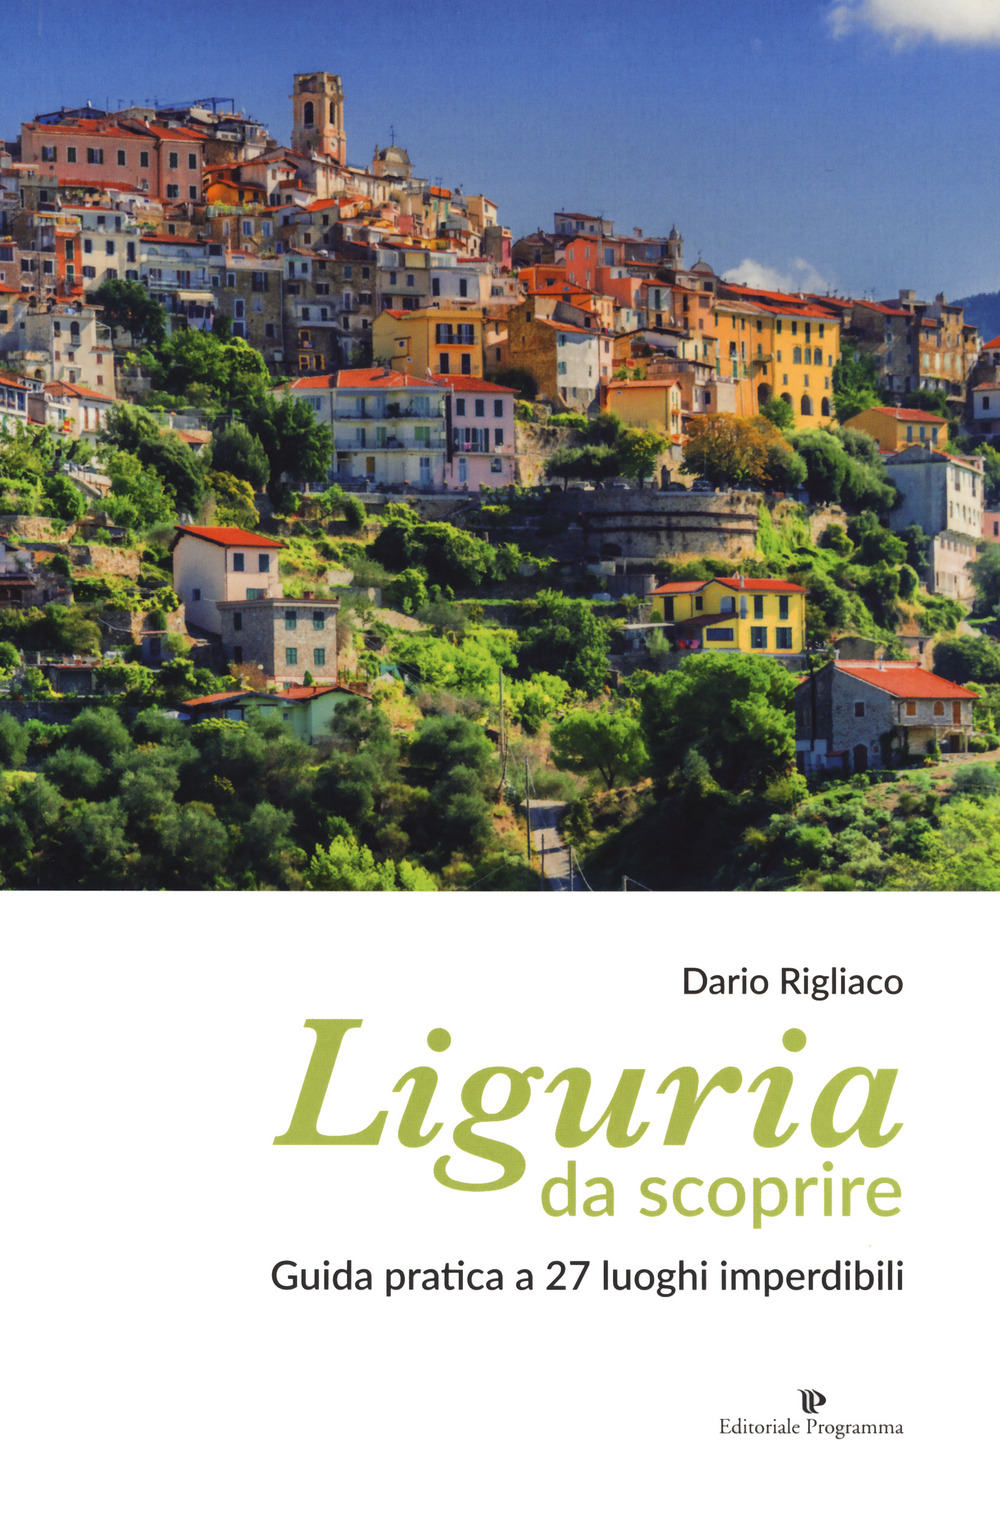 Liguria da scoprire. Guida pratica a 27 luoghi imperdibili